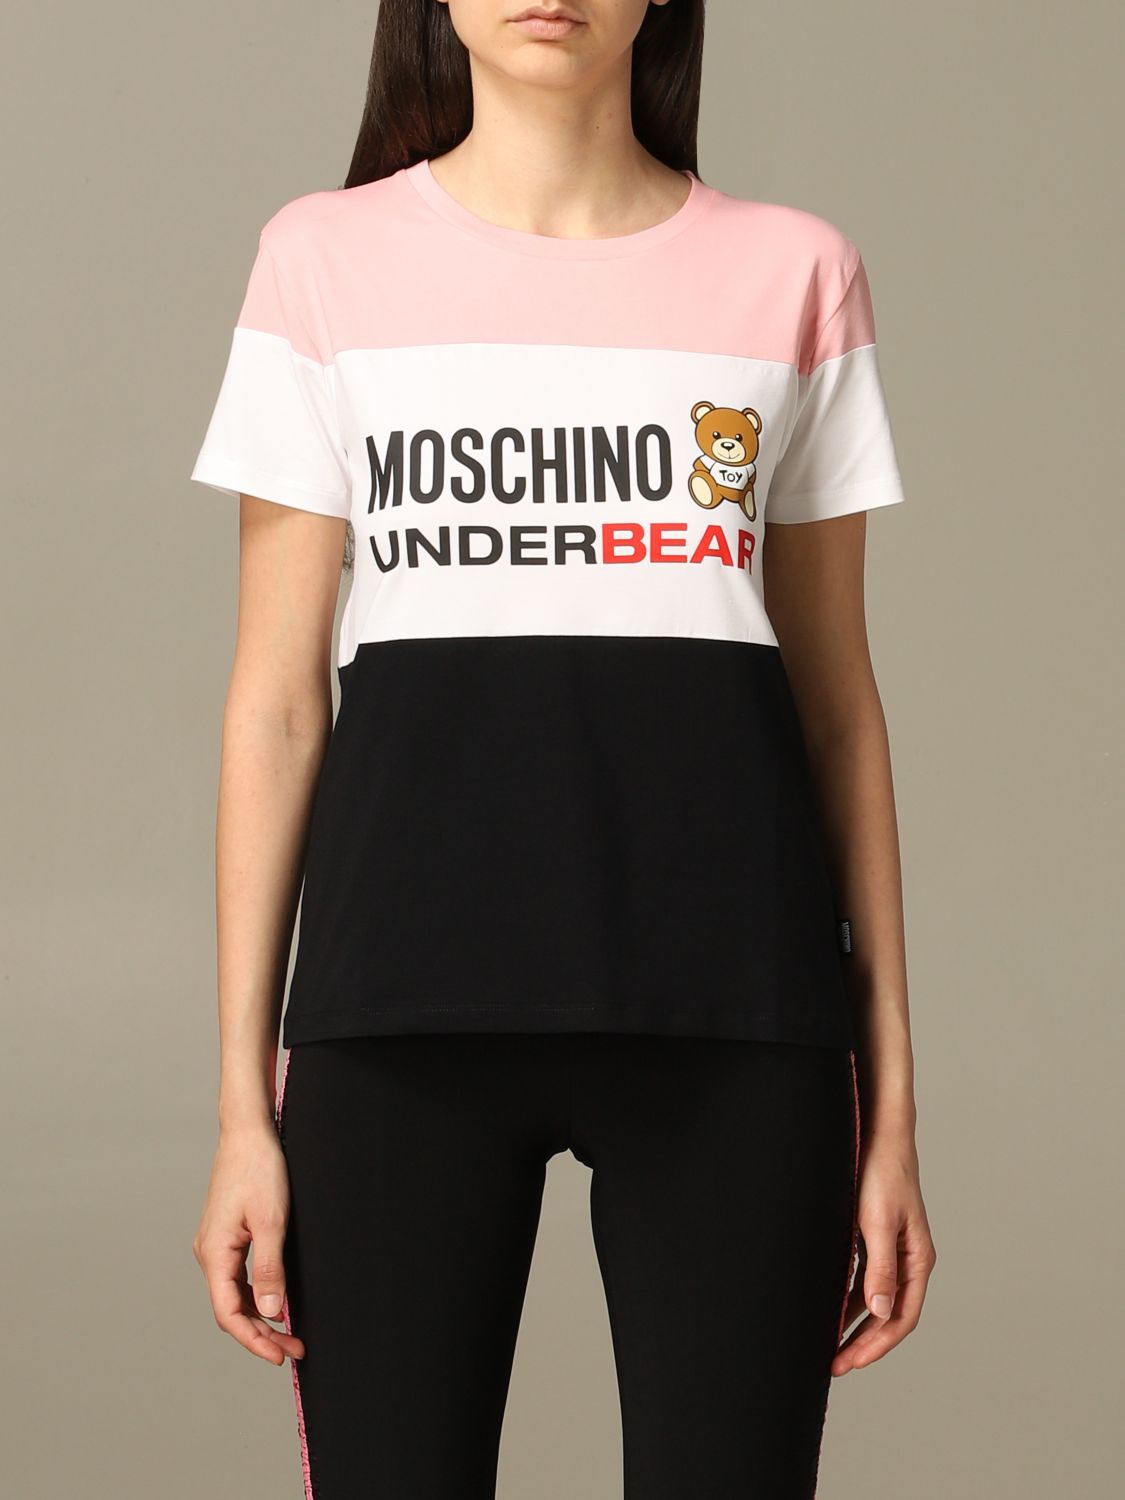 moschino underwear tshirt